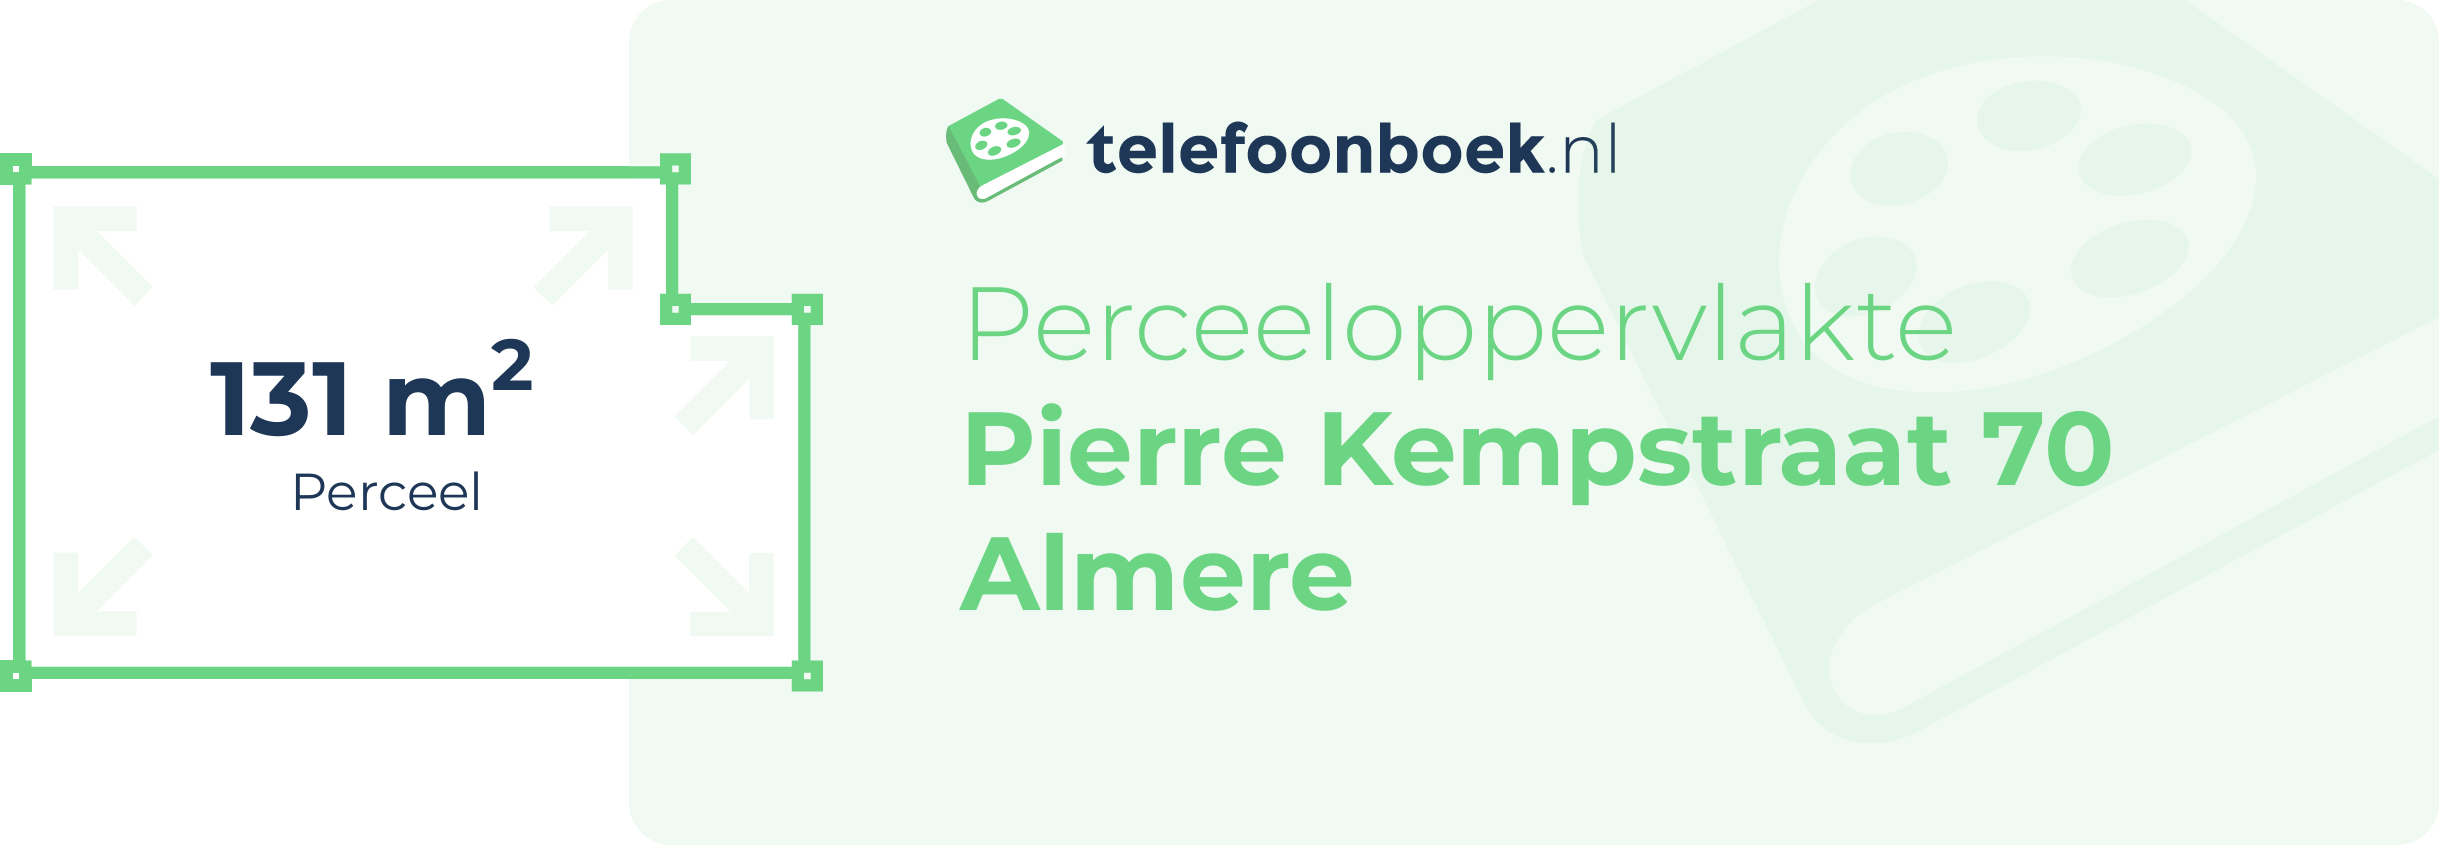 Perceeloppervlakte Pierre Kempstraat 70 Almere